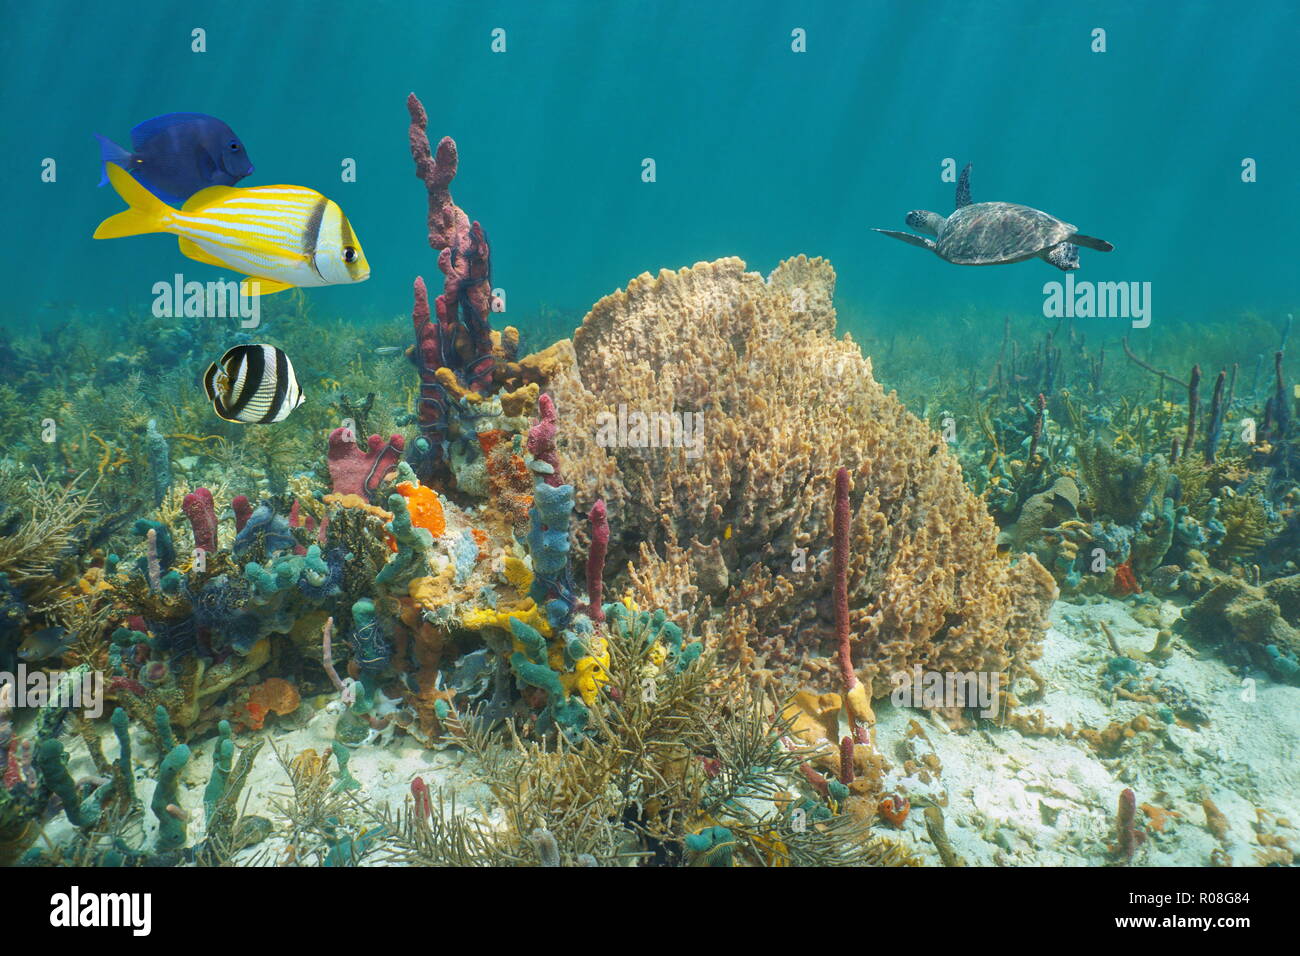 Vie marine colorée dans un récif de corail de la mer des Caraïbes sous l'eau, éponges de mer de poissons tropicaux et une tortue en arrière-plan Banque D'Images